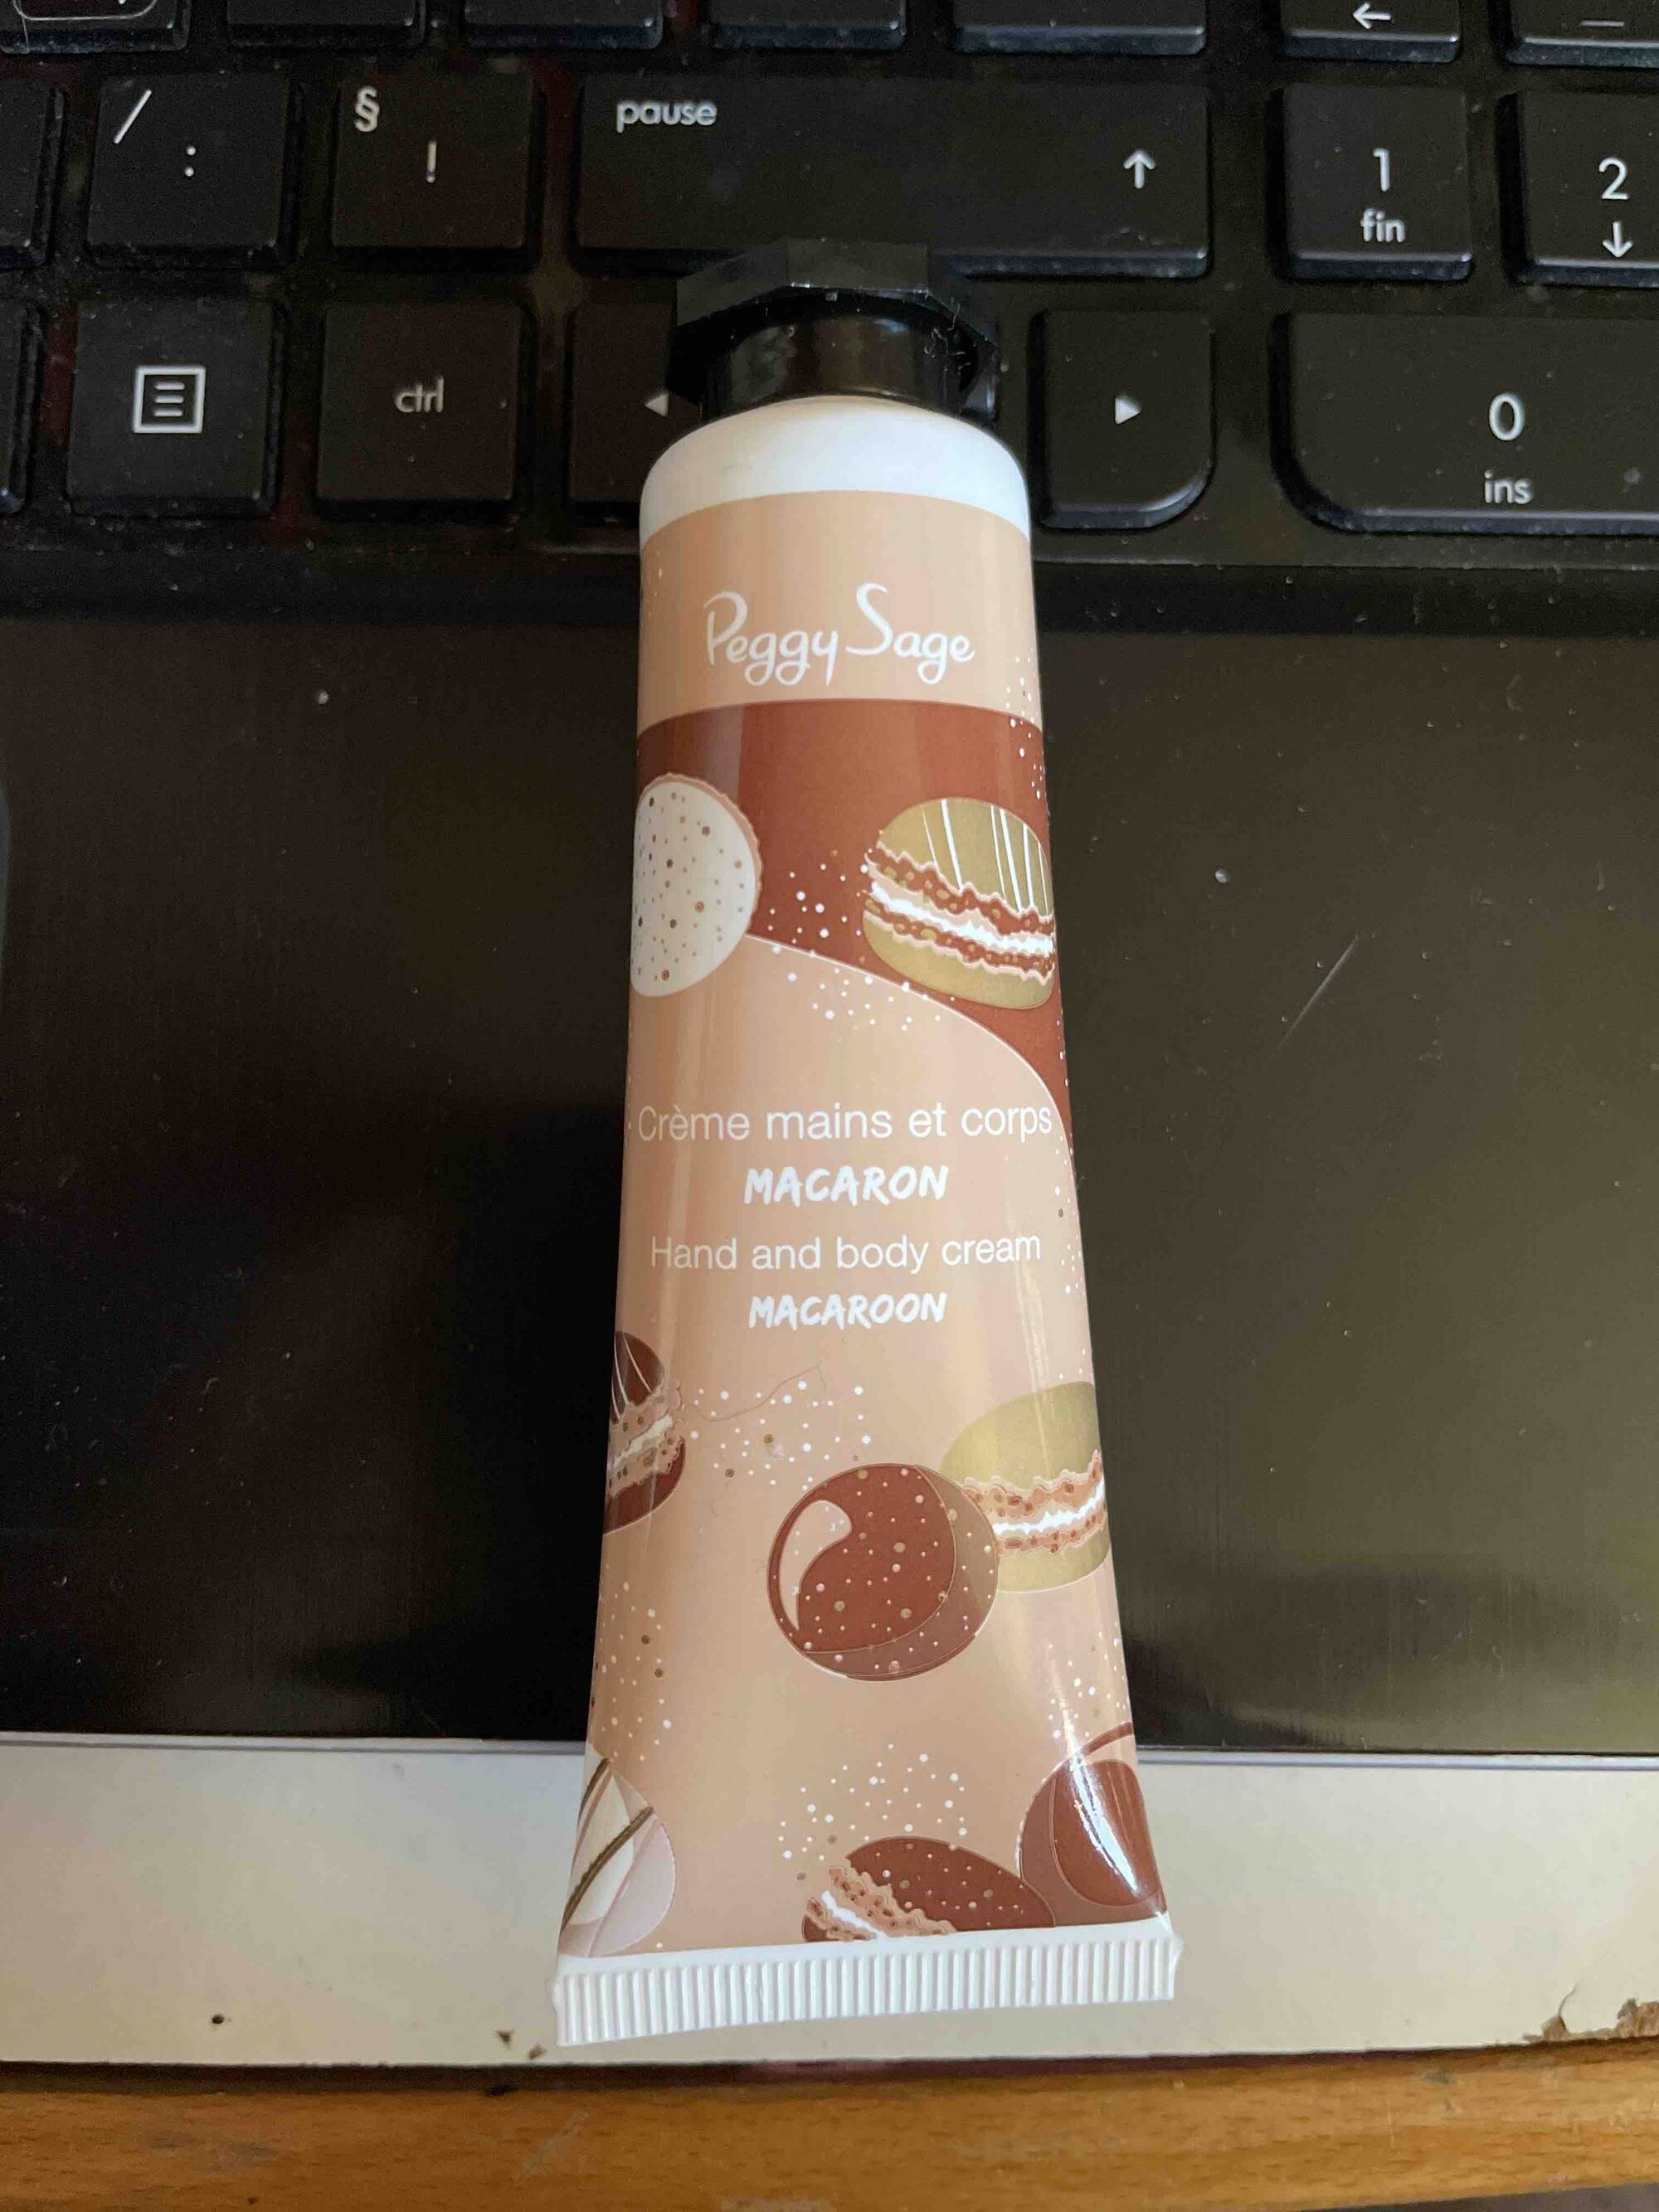 PEGGY SAGE - Macaron - Crème mains et corps